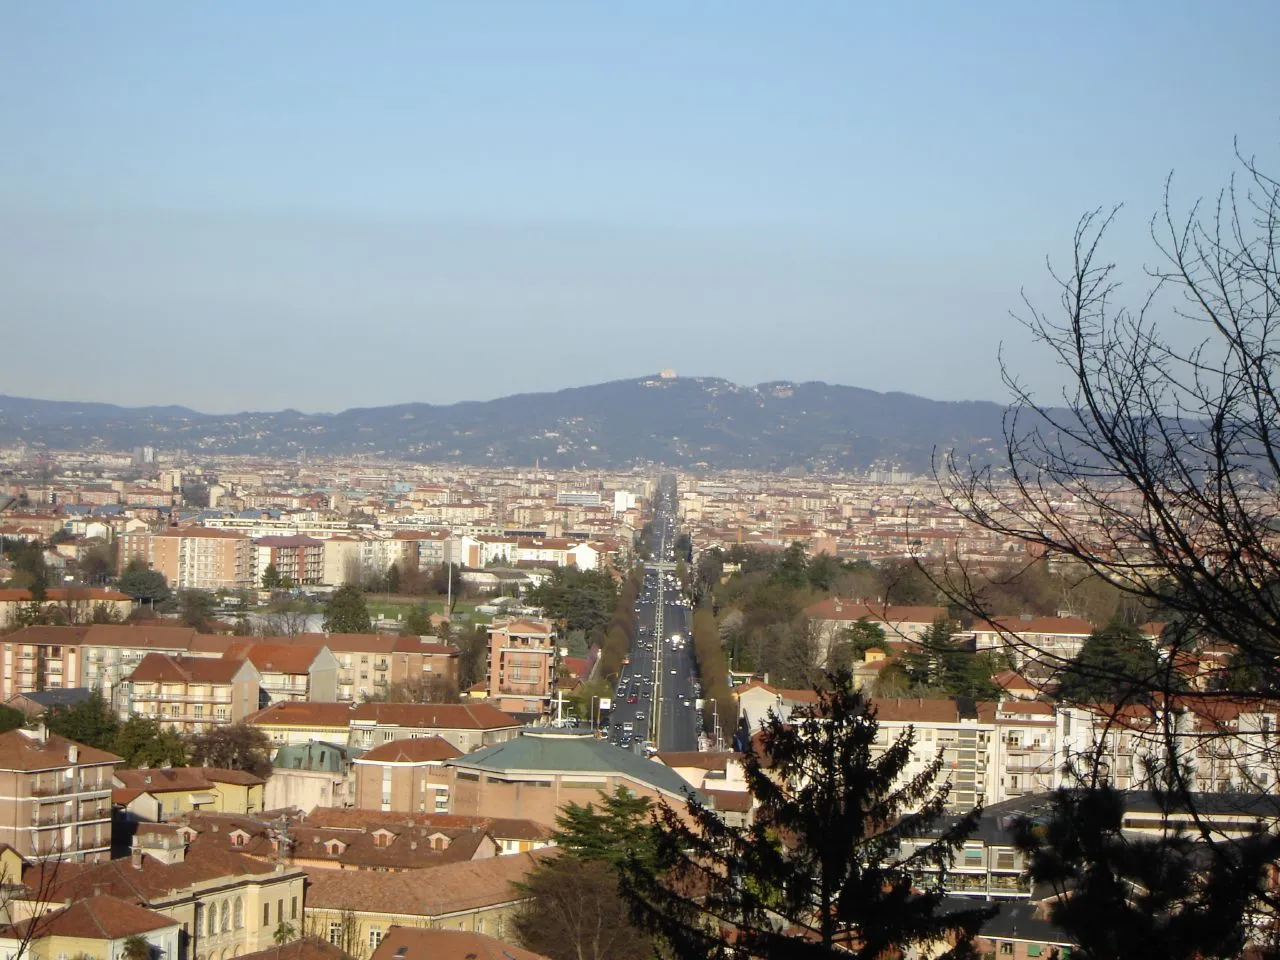 Image of Rivalta di Torino